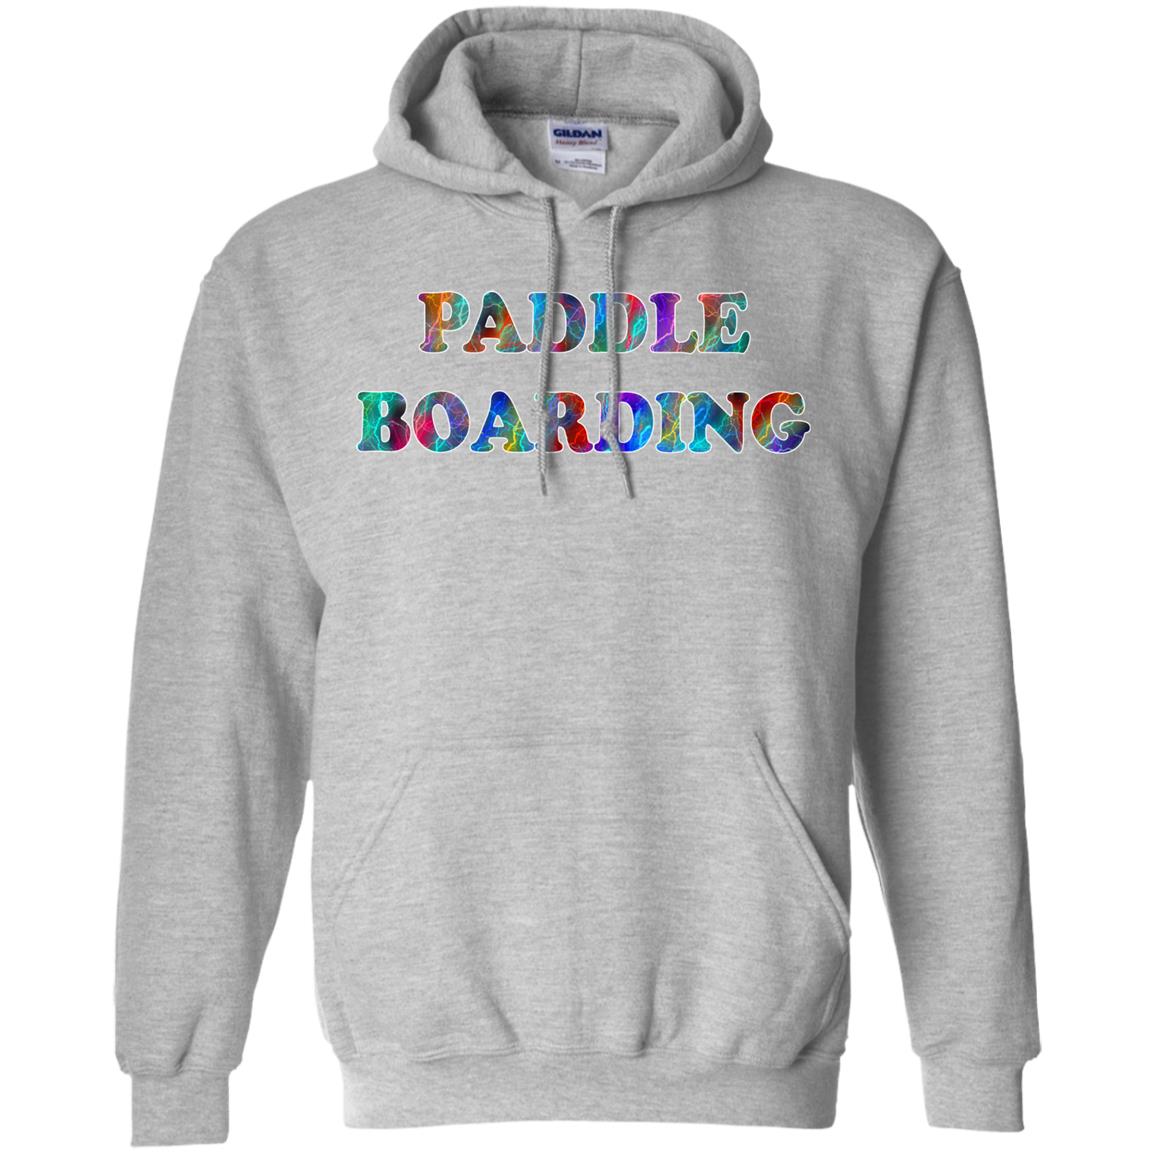 Paddle Boarding Hoodie